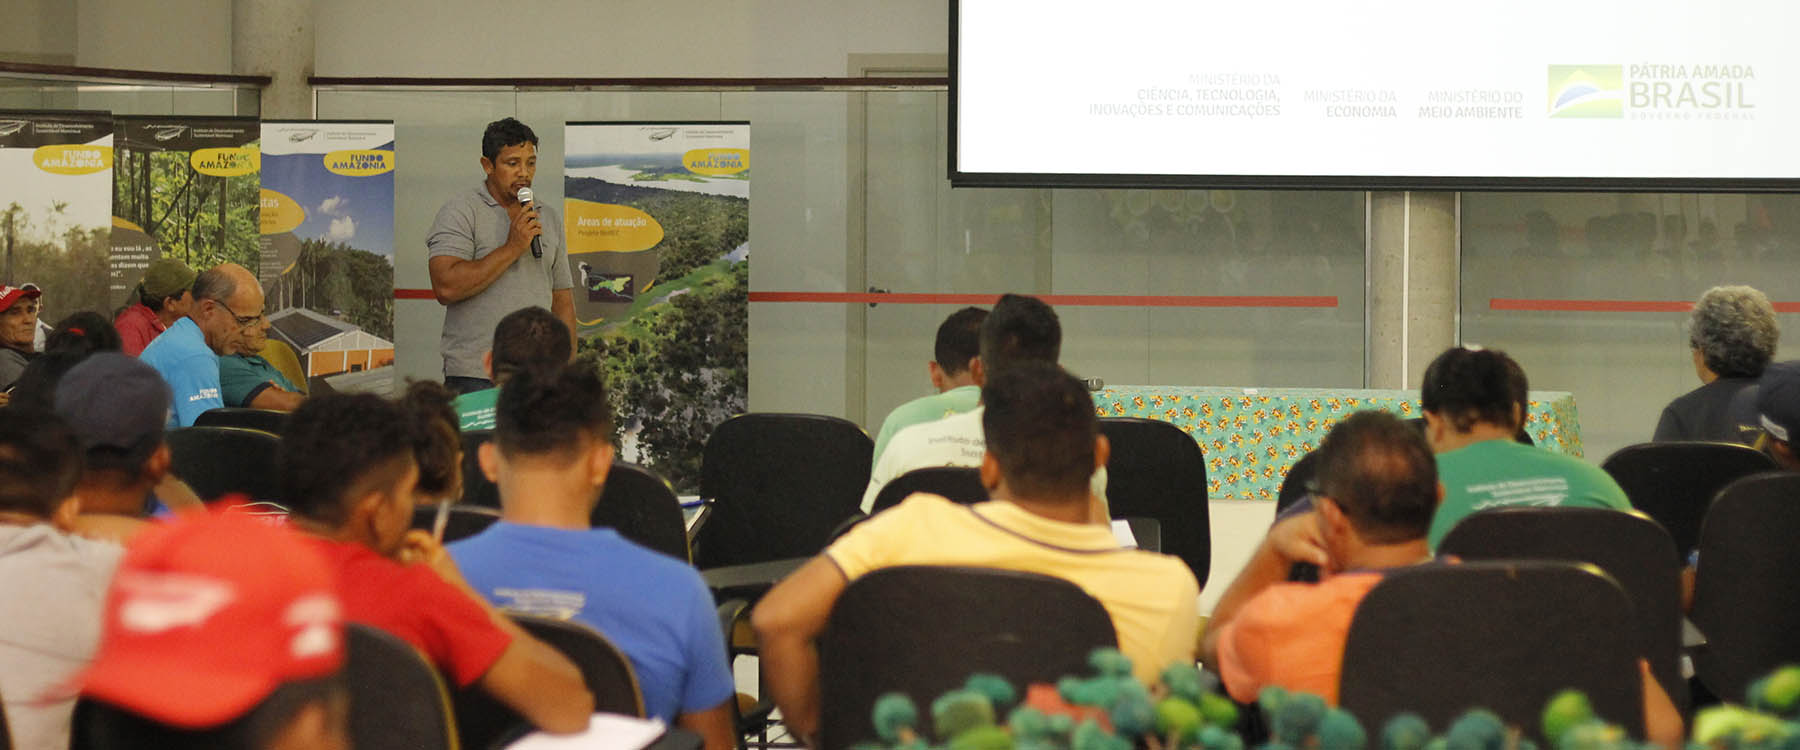 Instituto Mamirauá realiza seminário final de projeto financiado pelo Fundo Amazônia